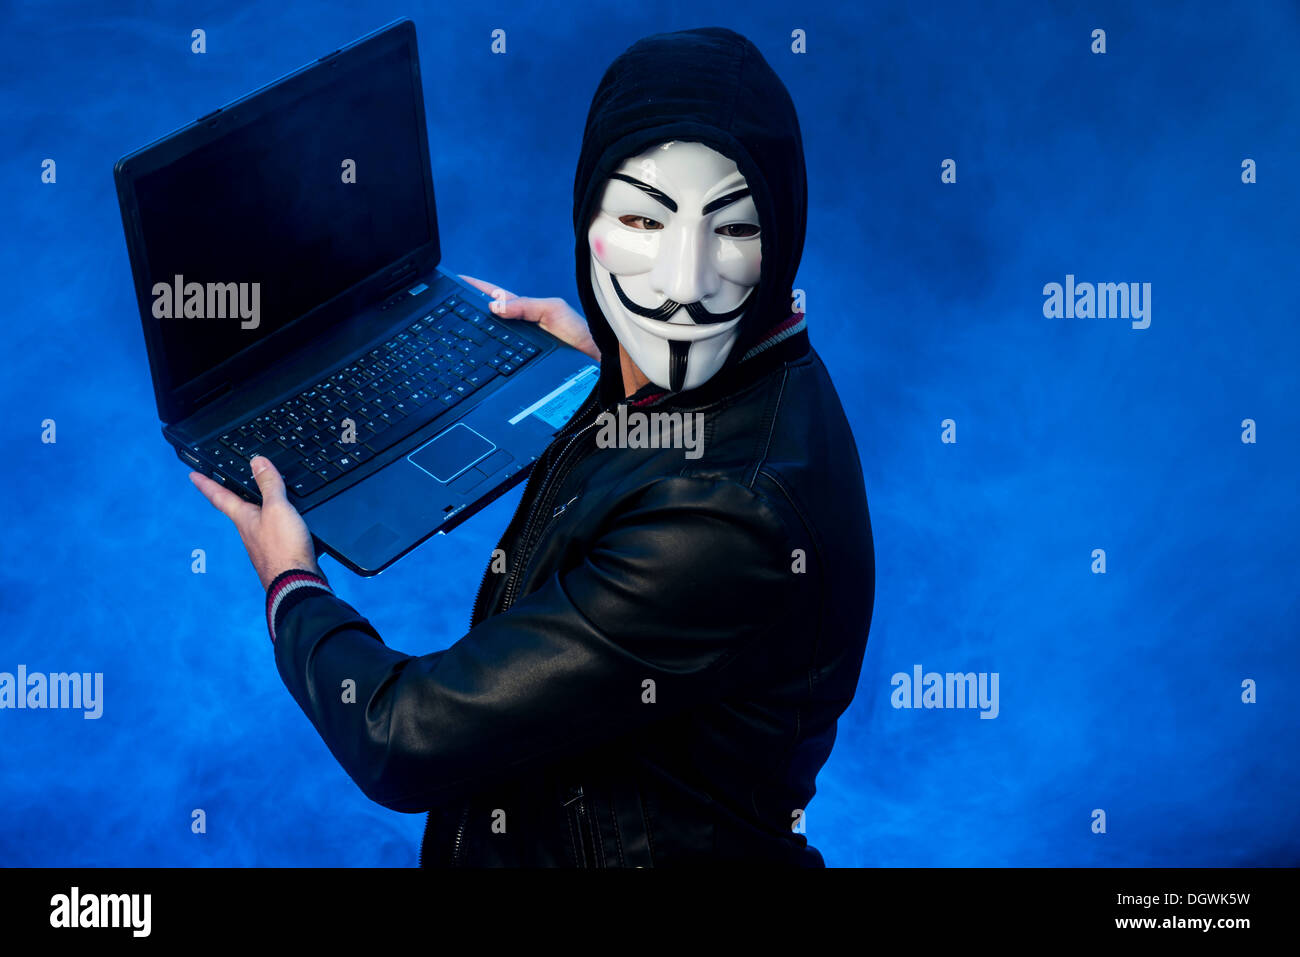 Jeune homme portant un masque anonyme avec un capuchon et une veste en cuir noire, tenant un ordinateur portable Banque D'Images